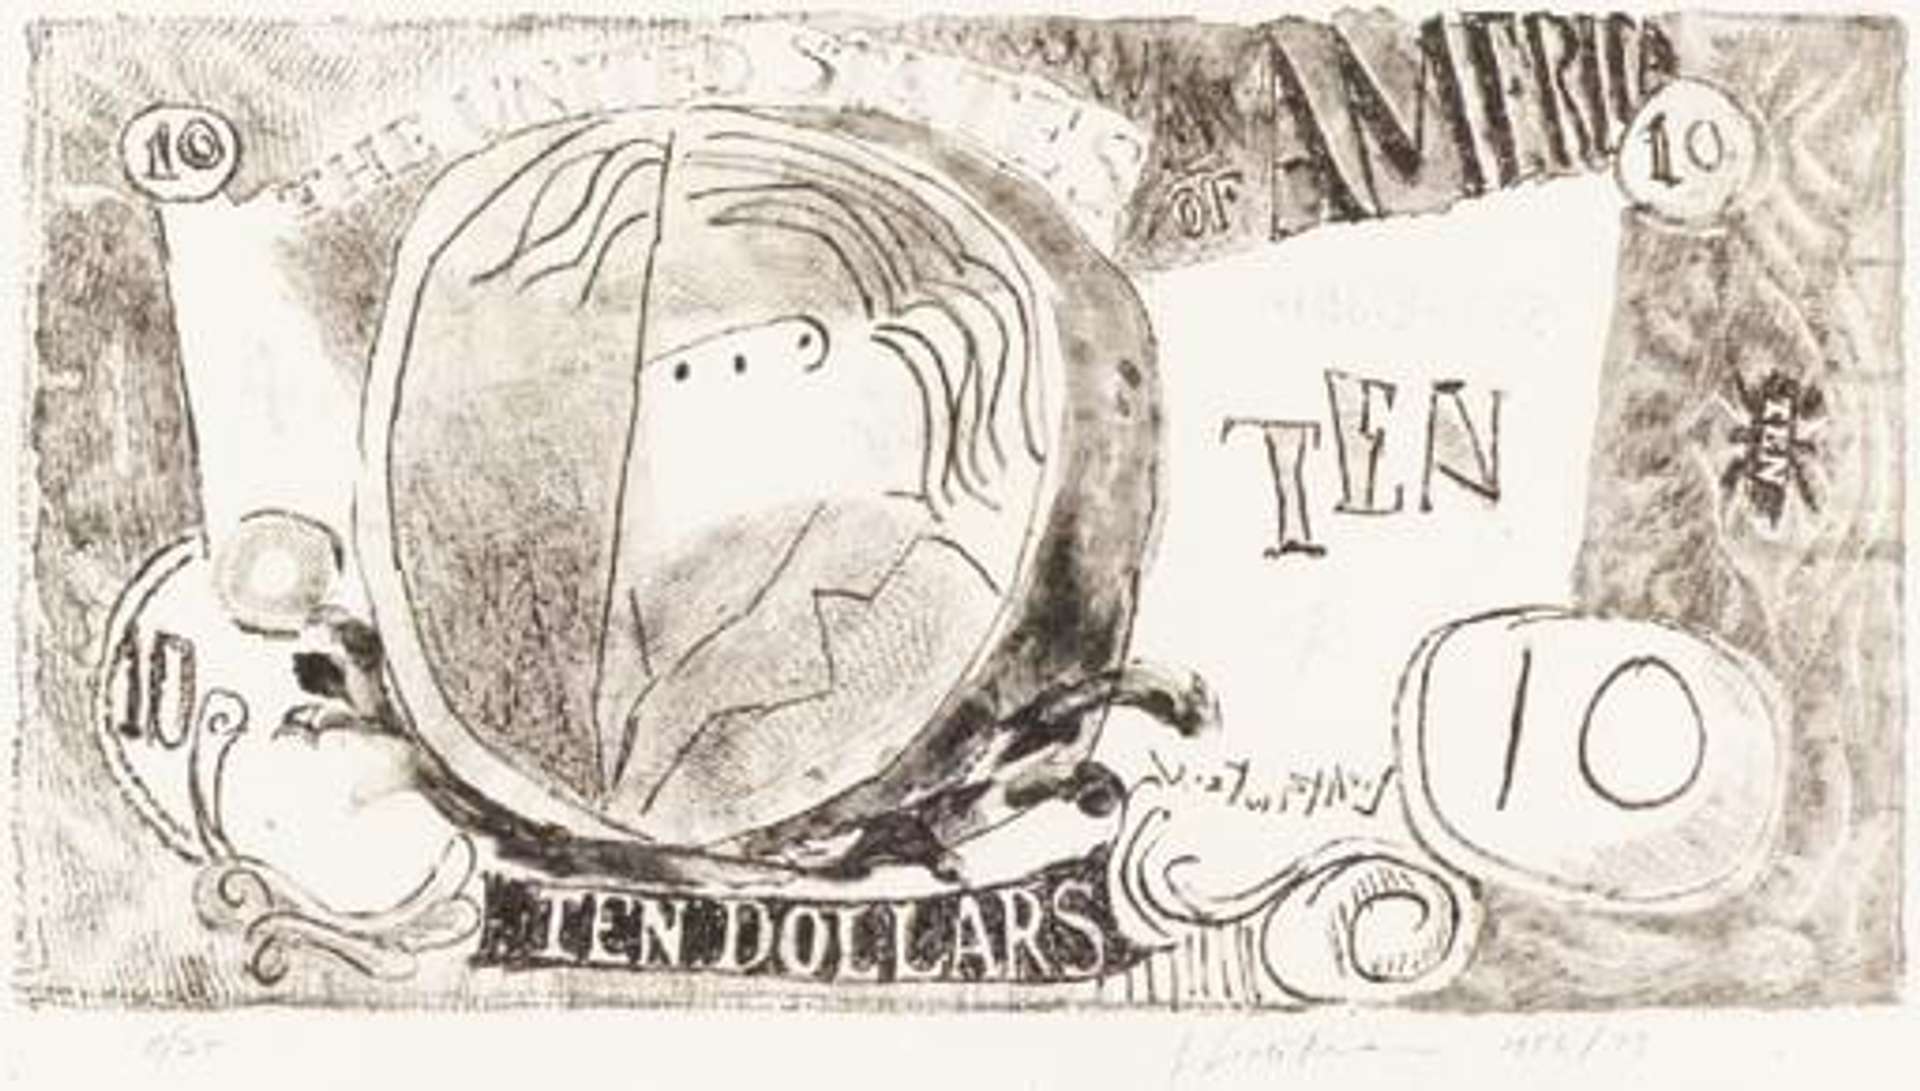 Ten Dollar Bill by Roy Lichtenstein